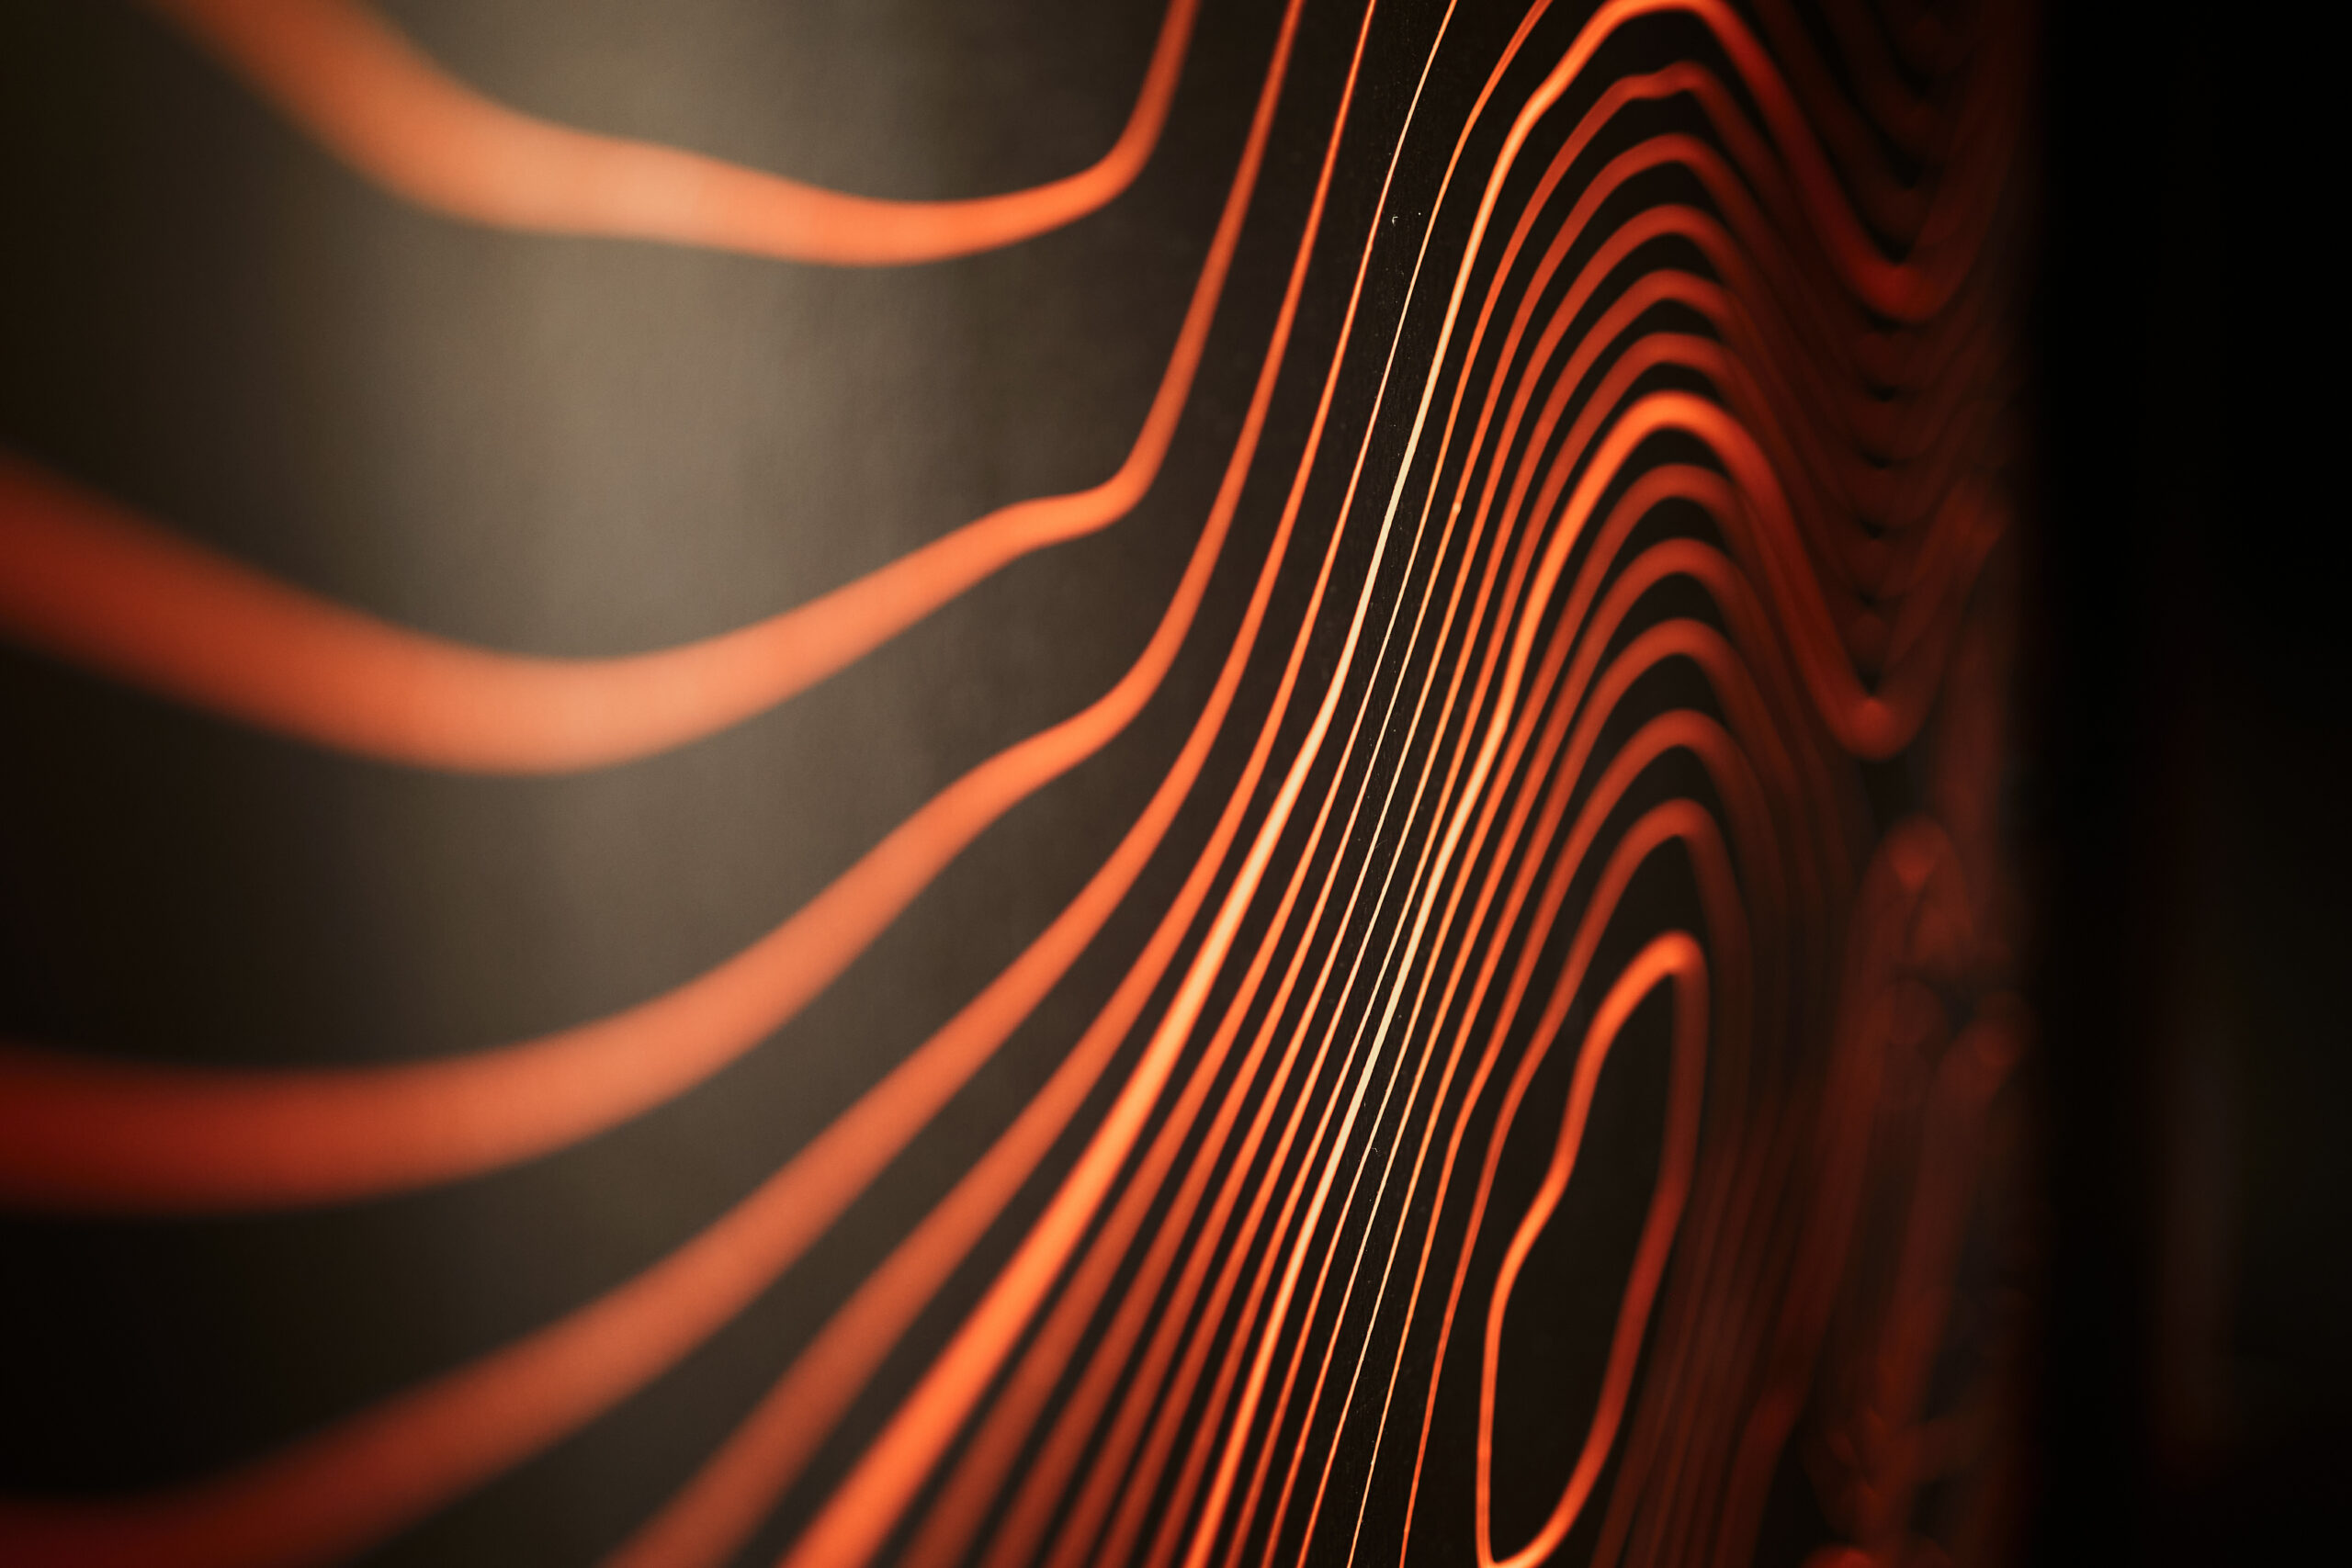 Bild von orangen Linien, die sich über eine schwarze Oberfläche schlängeln.